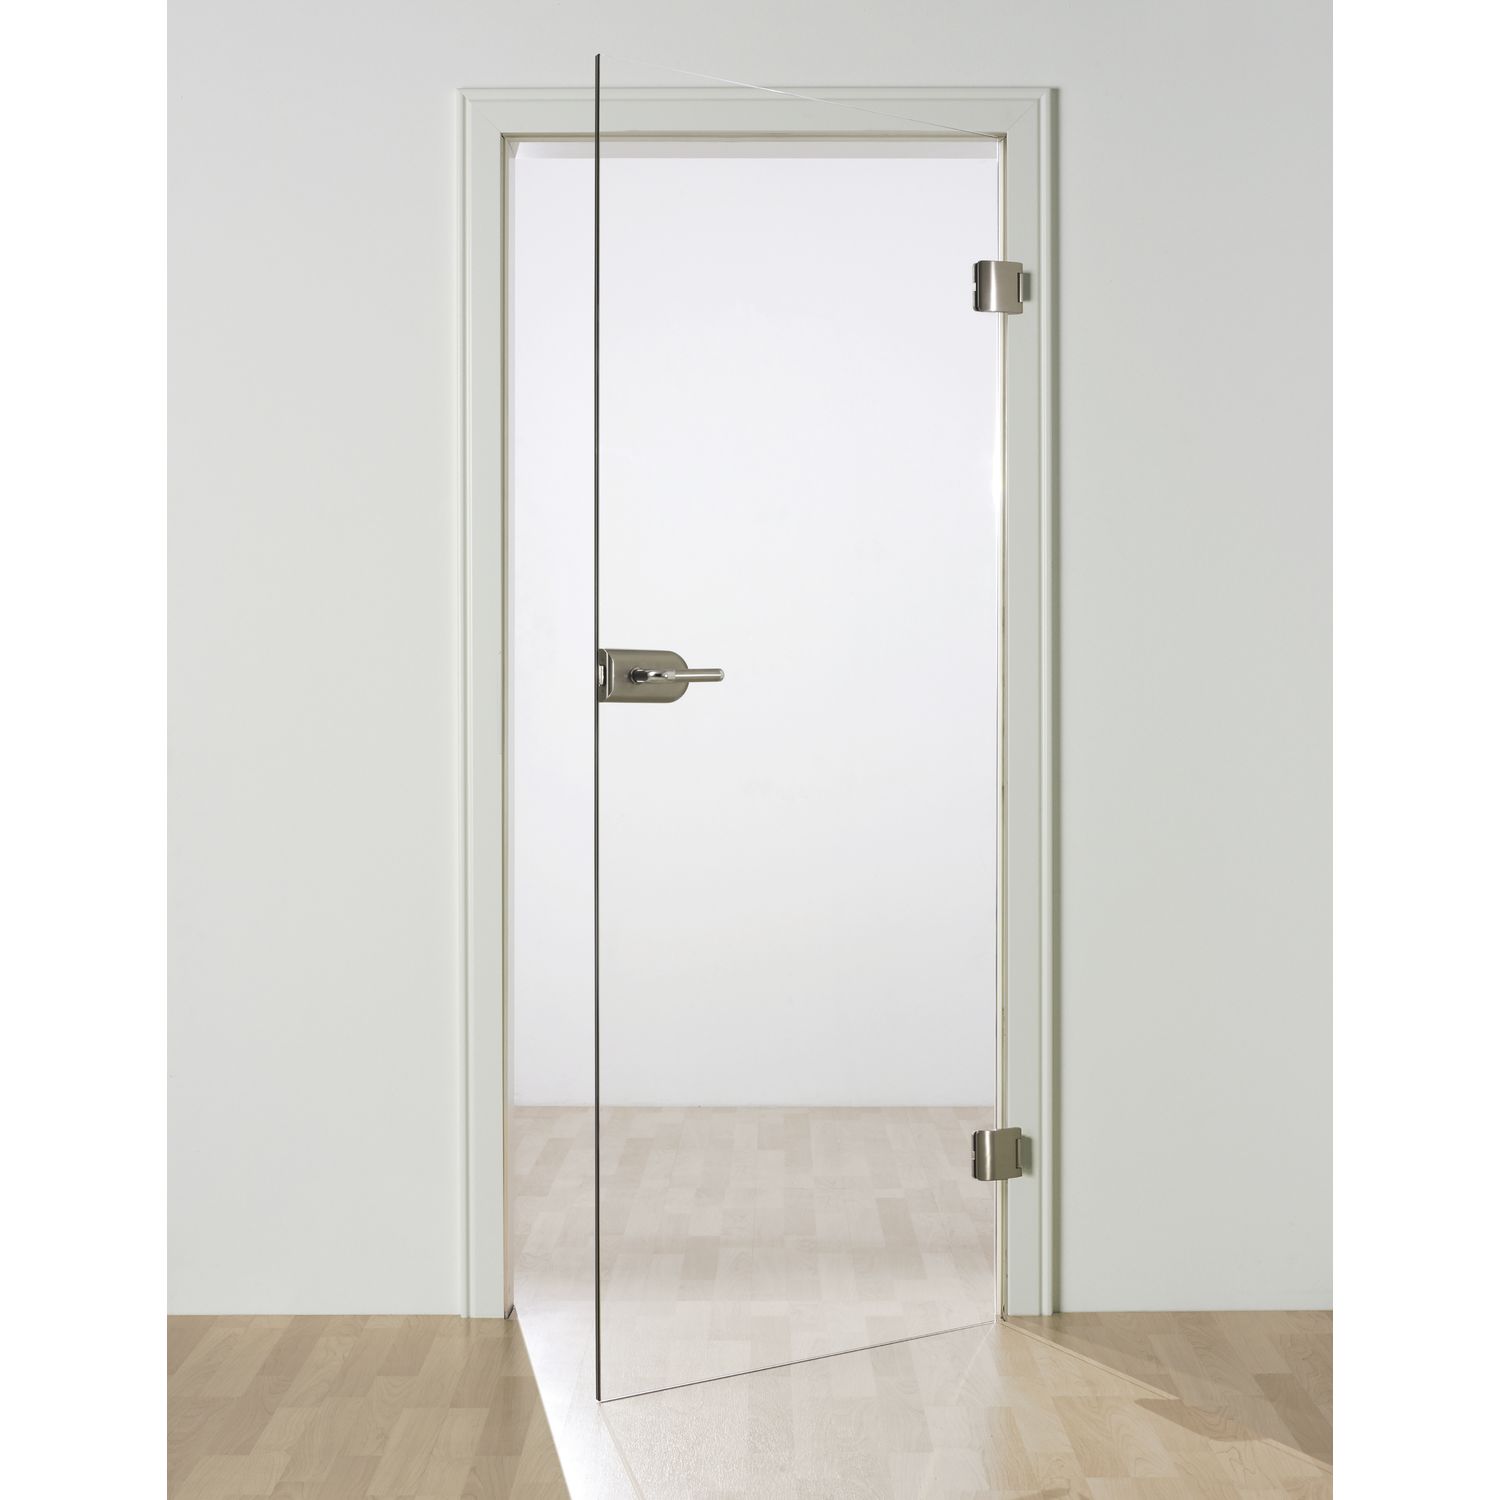 Купить матовое стекло для двери. Межкомнатная стеклянная дверь Style p spmg10-02-27. Стеклянная матовая дверь. Дверь со стеклом. Двери из матового стекла.